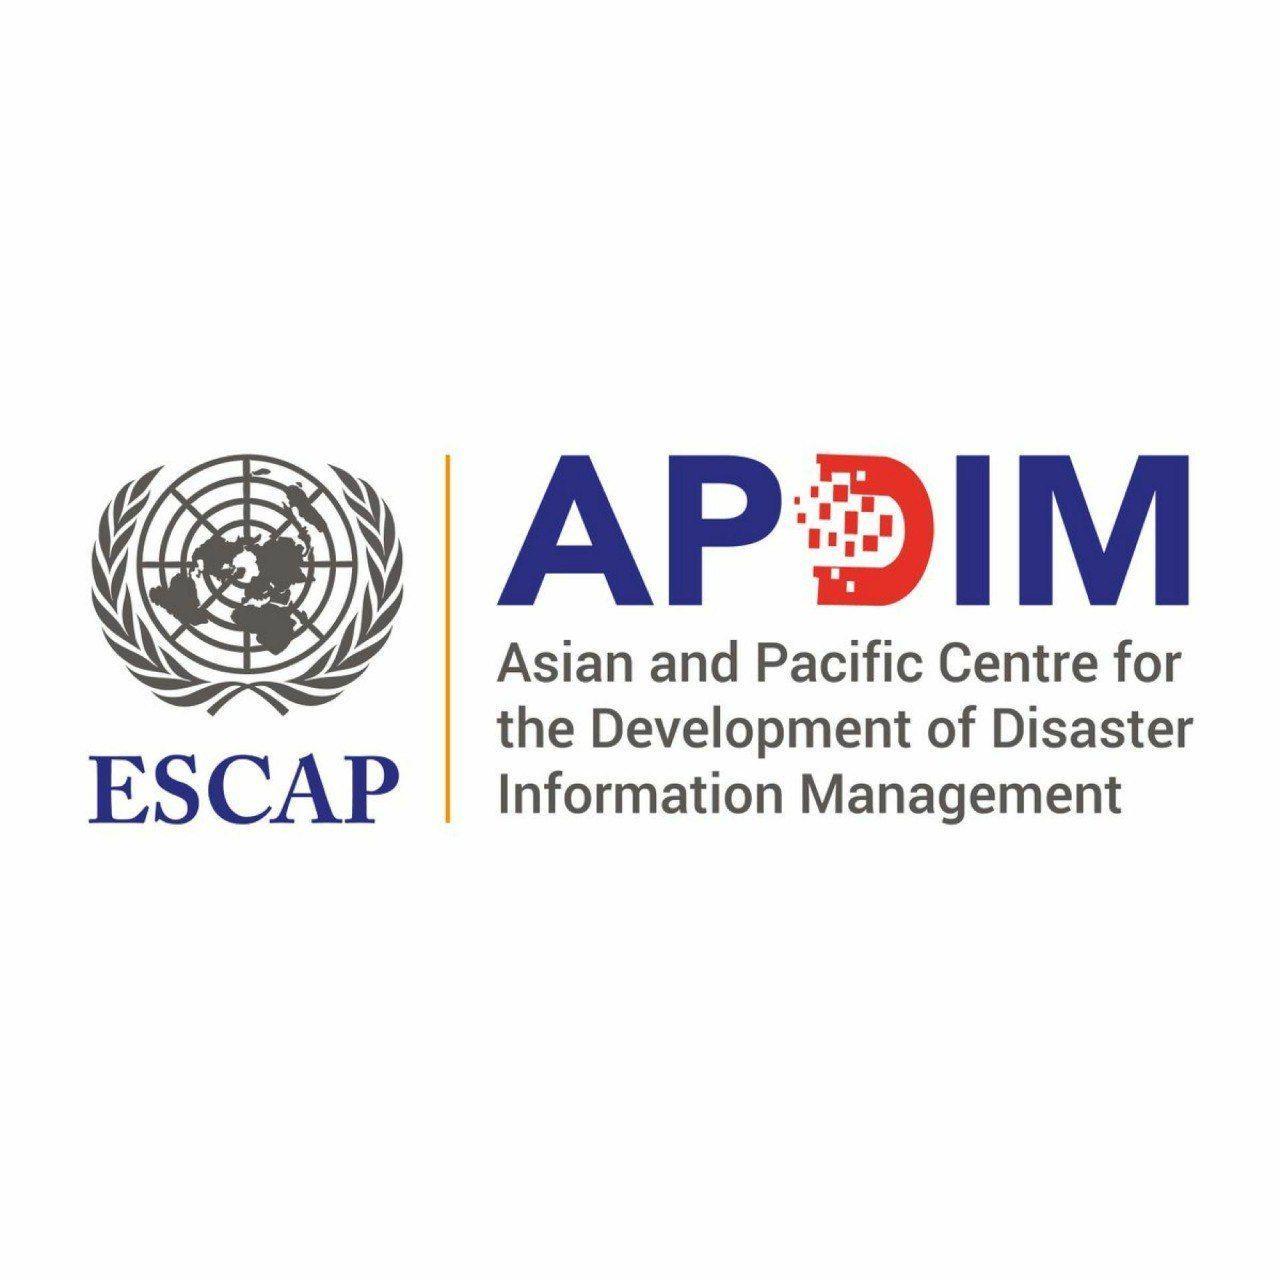 تایید تاسیس مرکز آسیا و اقیانوسیه برای توسعه مدیریت اطلاعات بلایا